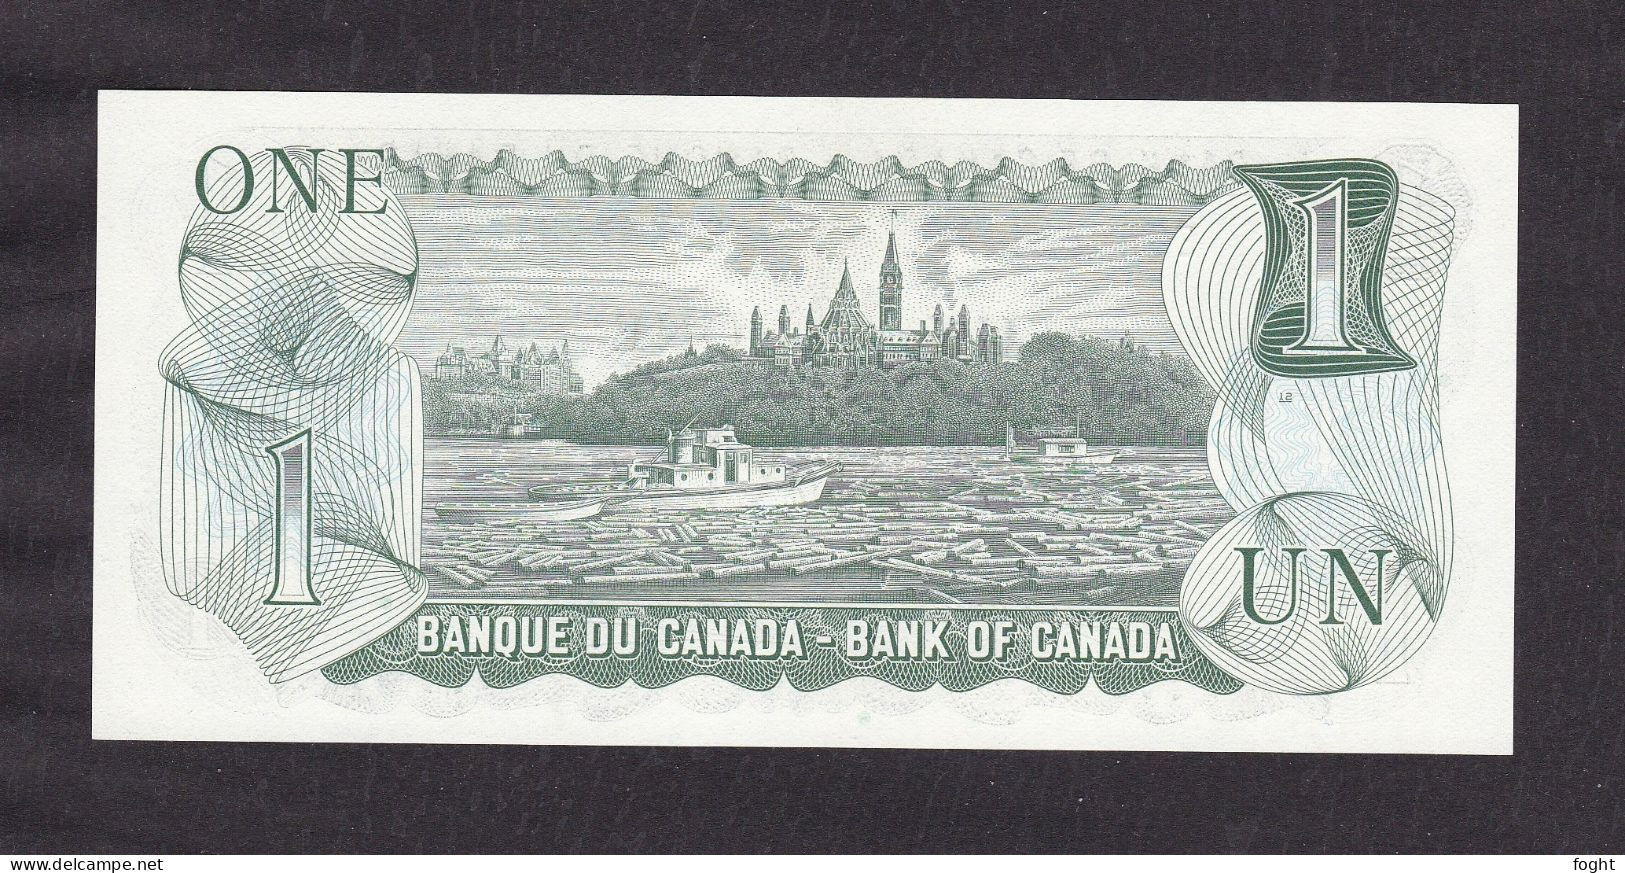 1973 Canada Banknote 1 Dollar,P#85C,UNC - Canada